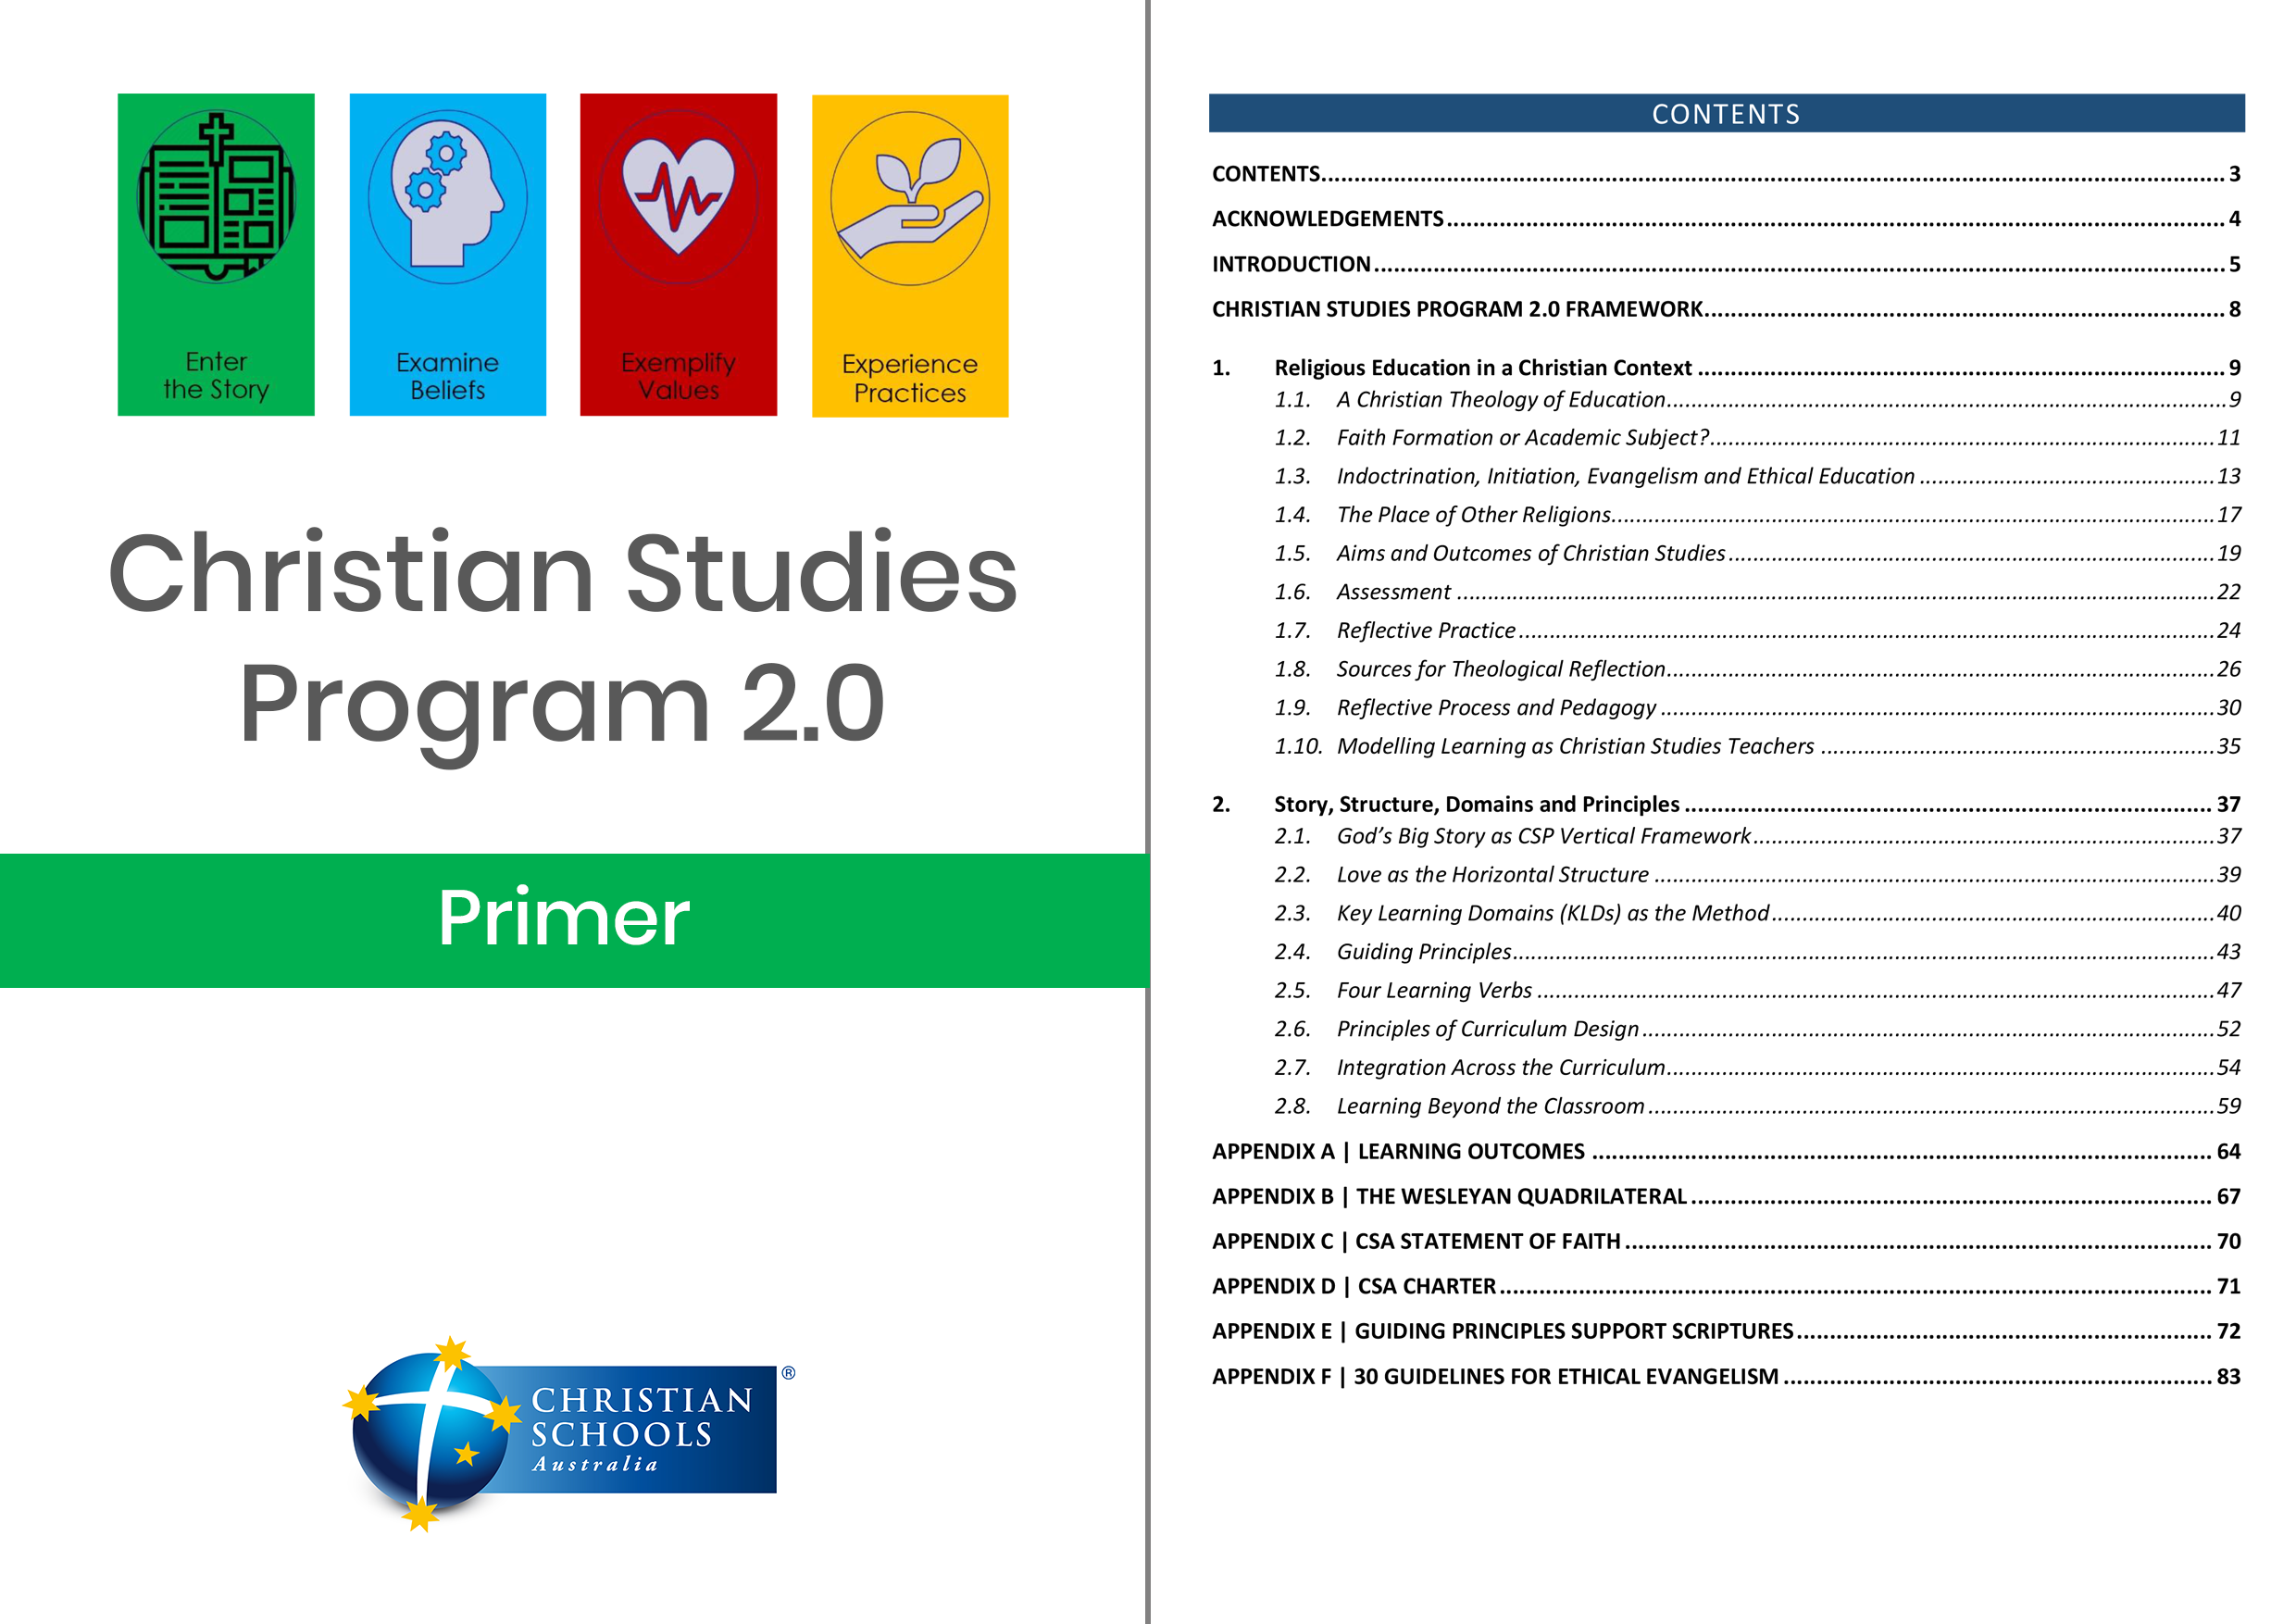 Christian Studies Program 2.0 - Primer